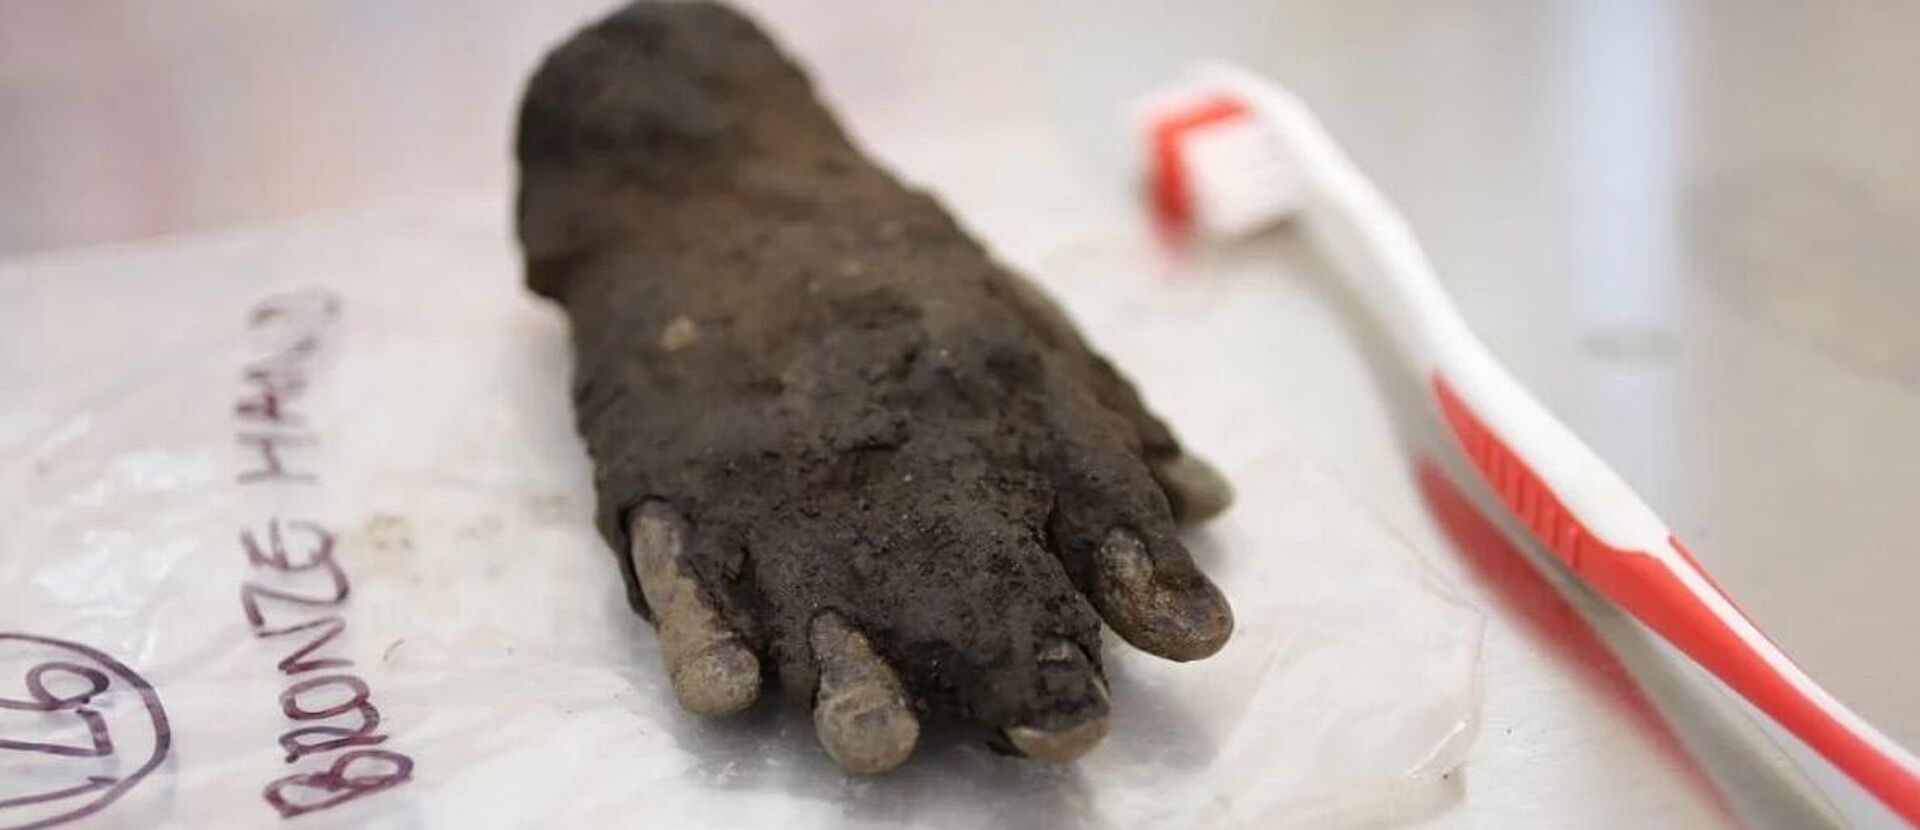 Mão de bronze rara descoberta em Roman Vindolanda, no Reino Unido - Sputnik Brasil, 1920, 12.07.2023